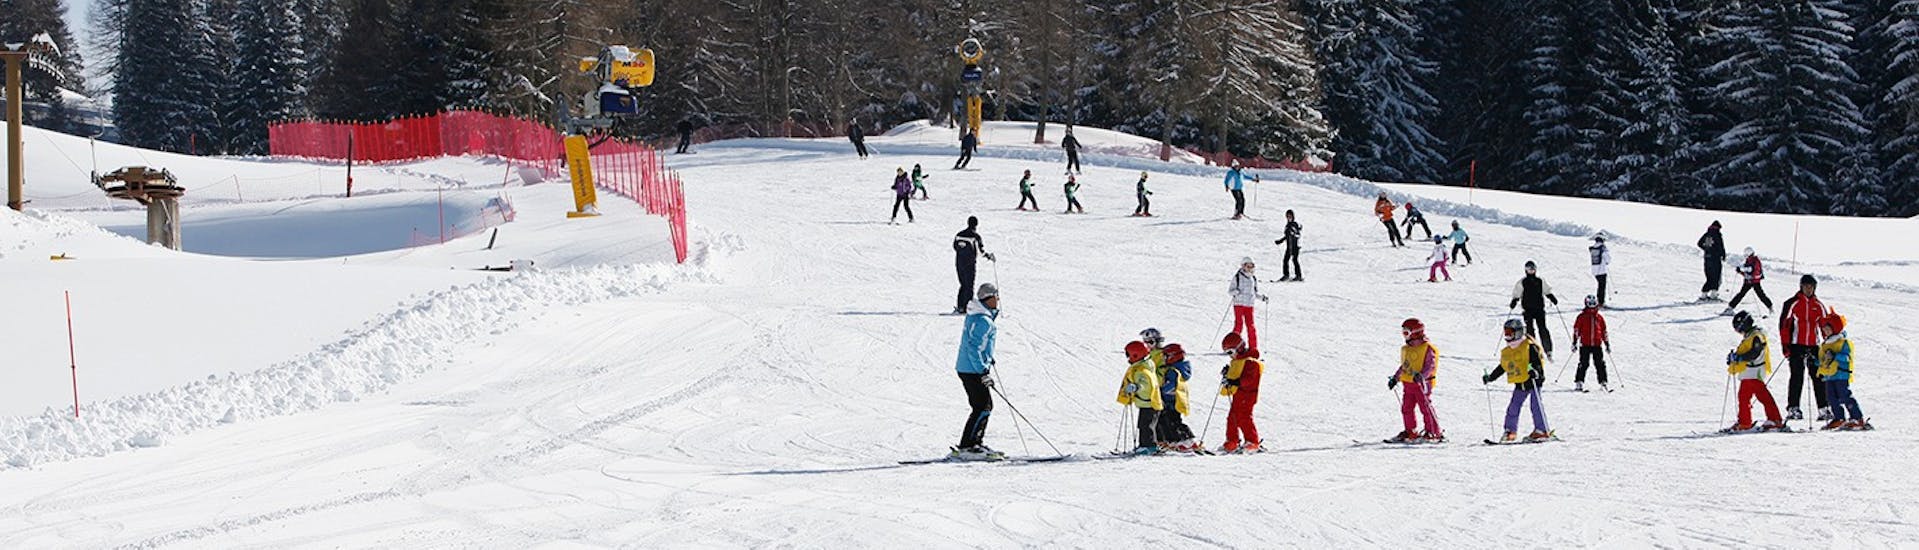 Pistes où se déroulent les Cours de ski pour Enfants (4-5 ans) pour Débutants de la Scuola Italiana Sci Folgaria-Serrada.